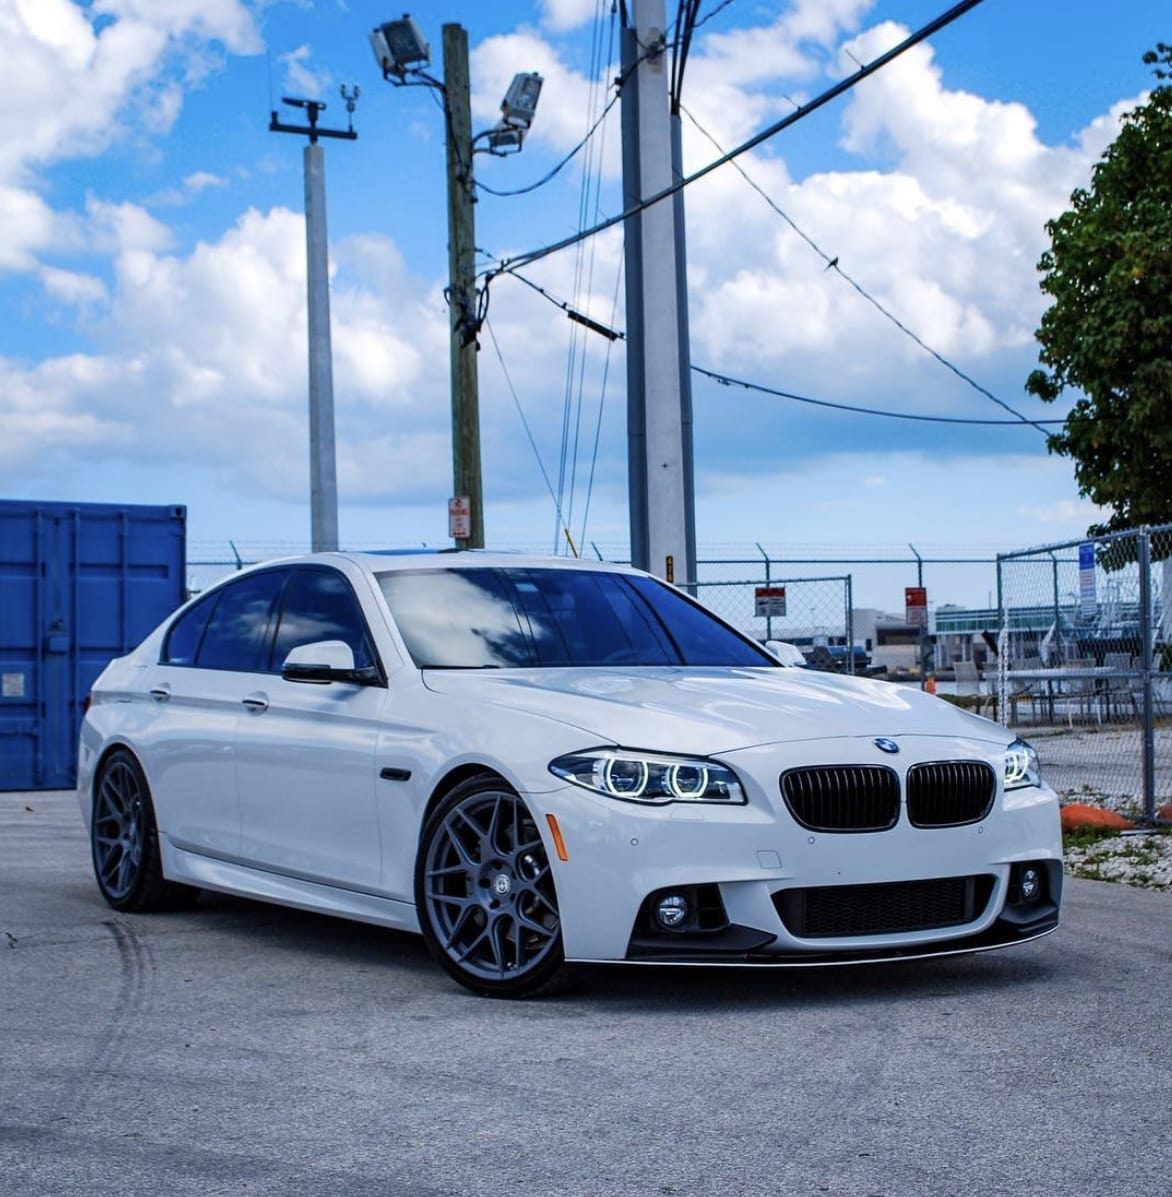 BMW F10 5 Series – West Coast Euros